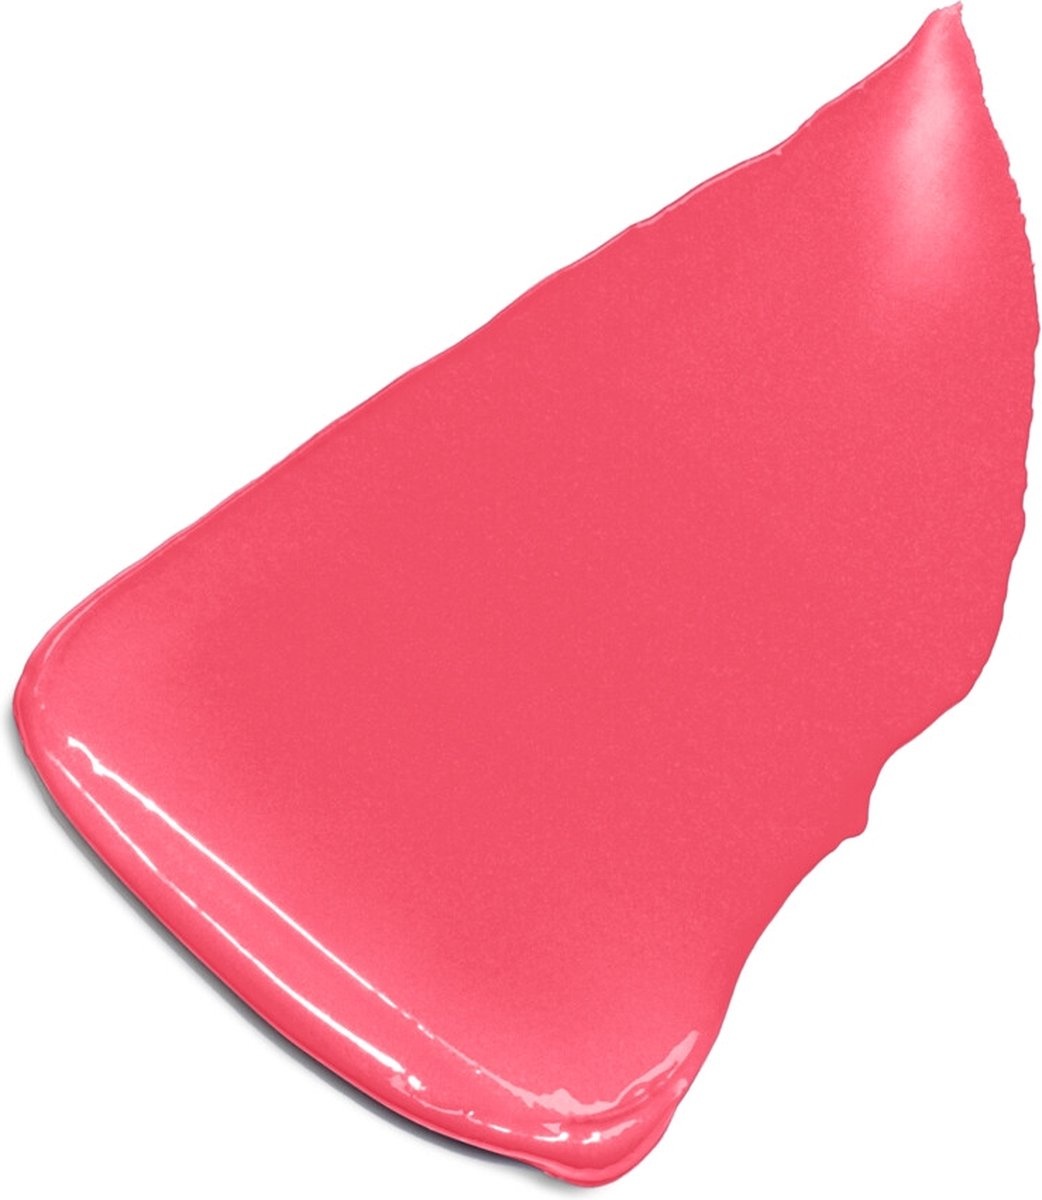 L’Oréal Paris Color Riche Satin Lipstick - 118 French Made - Roze Lippenstift